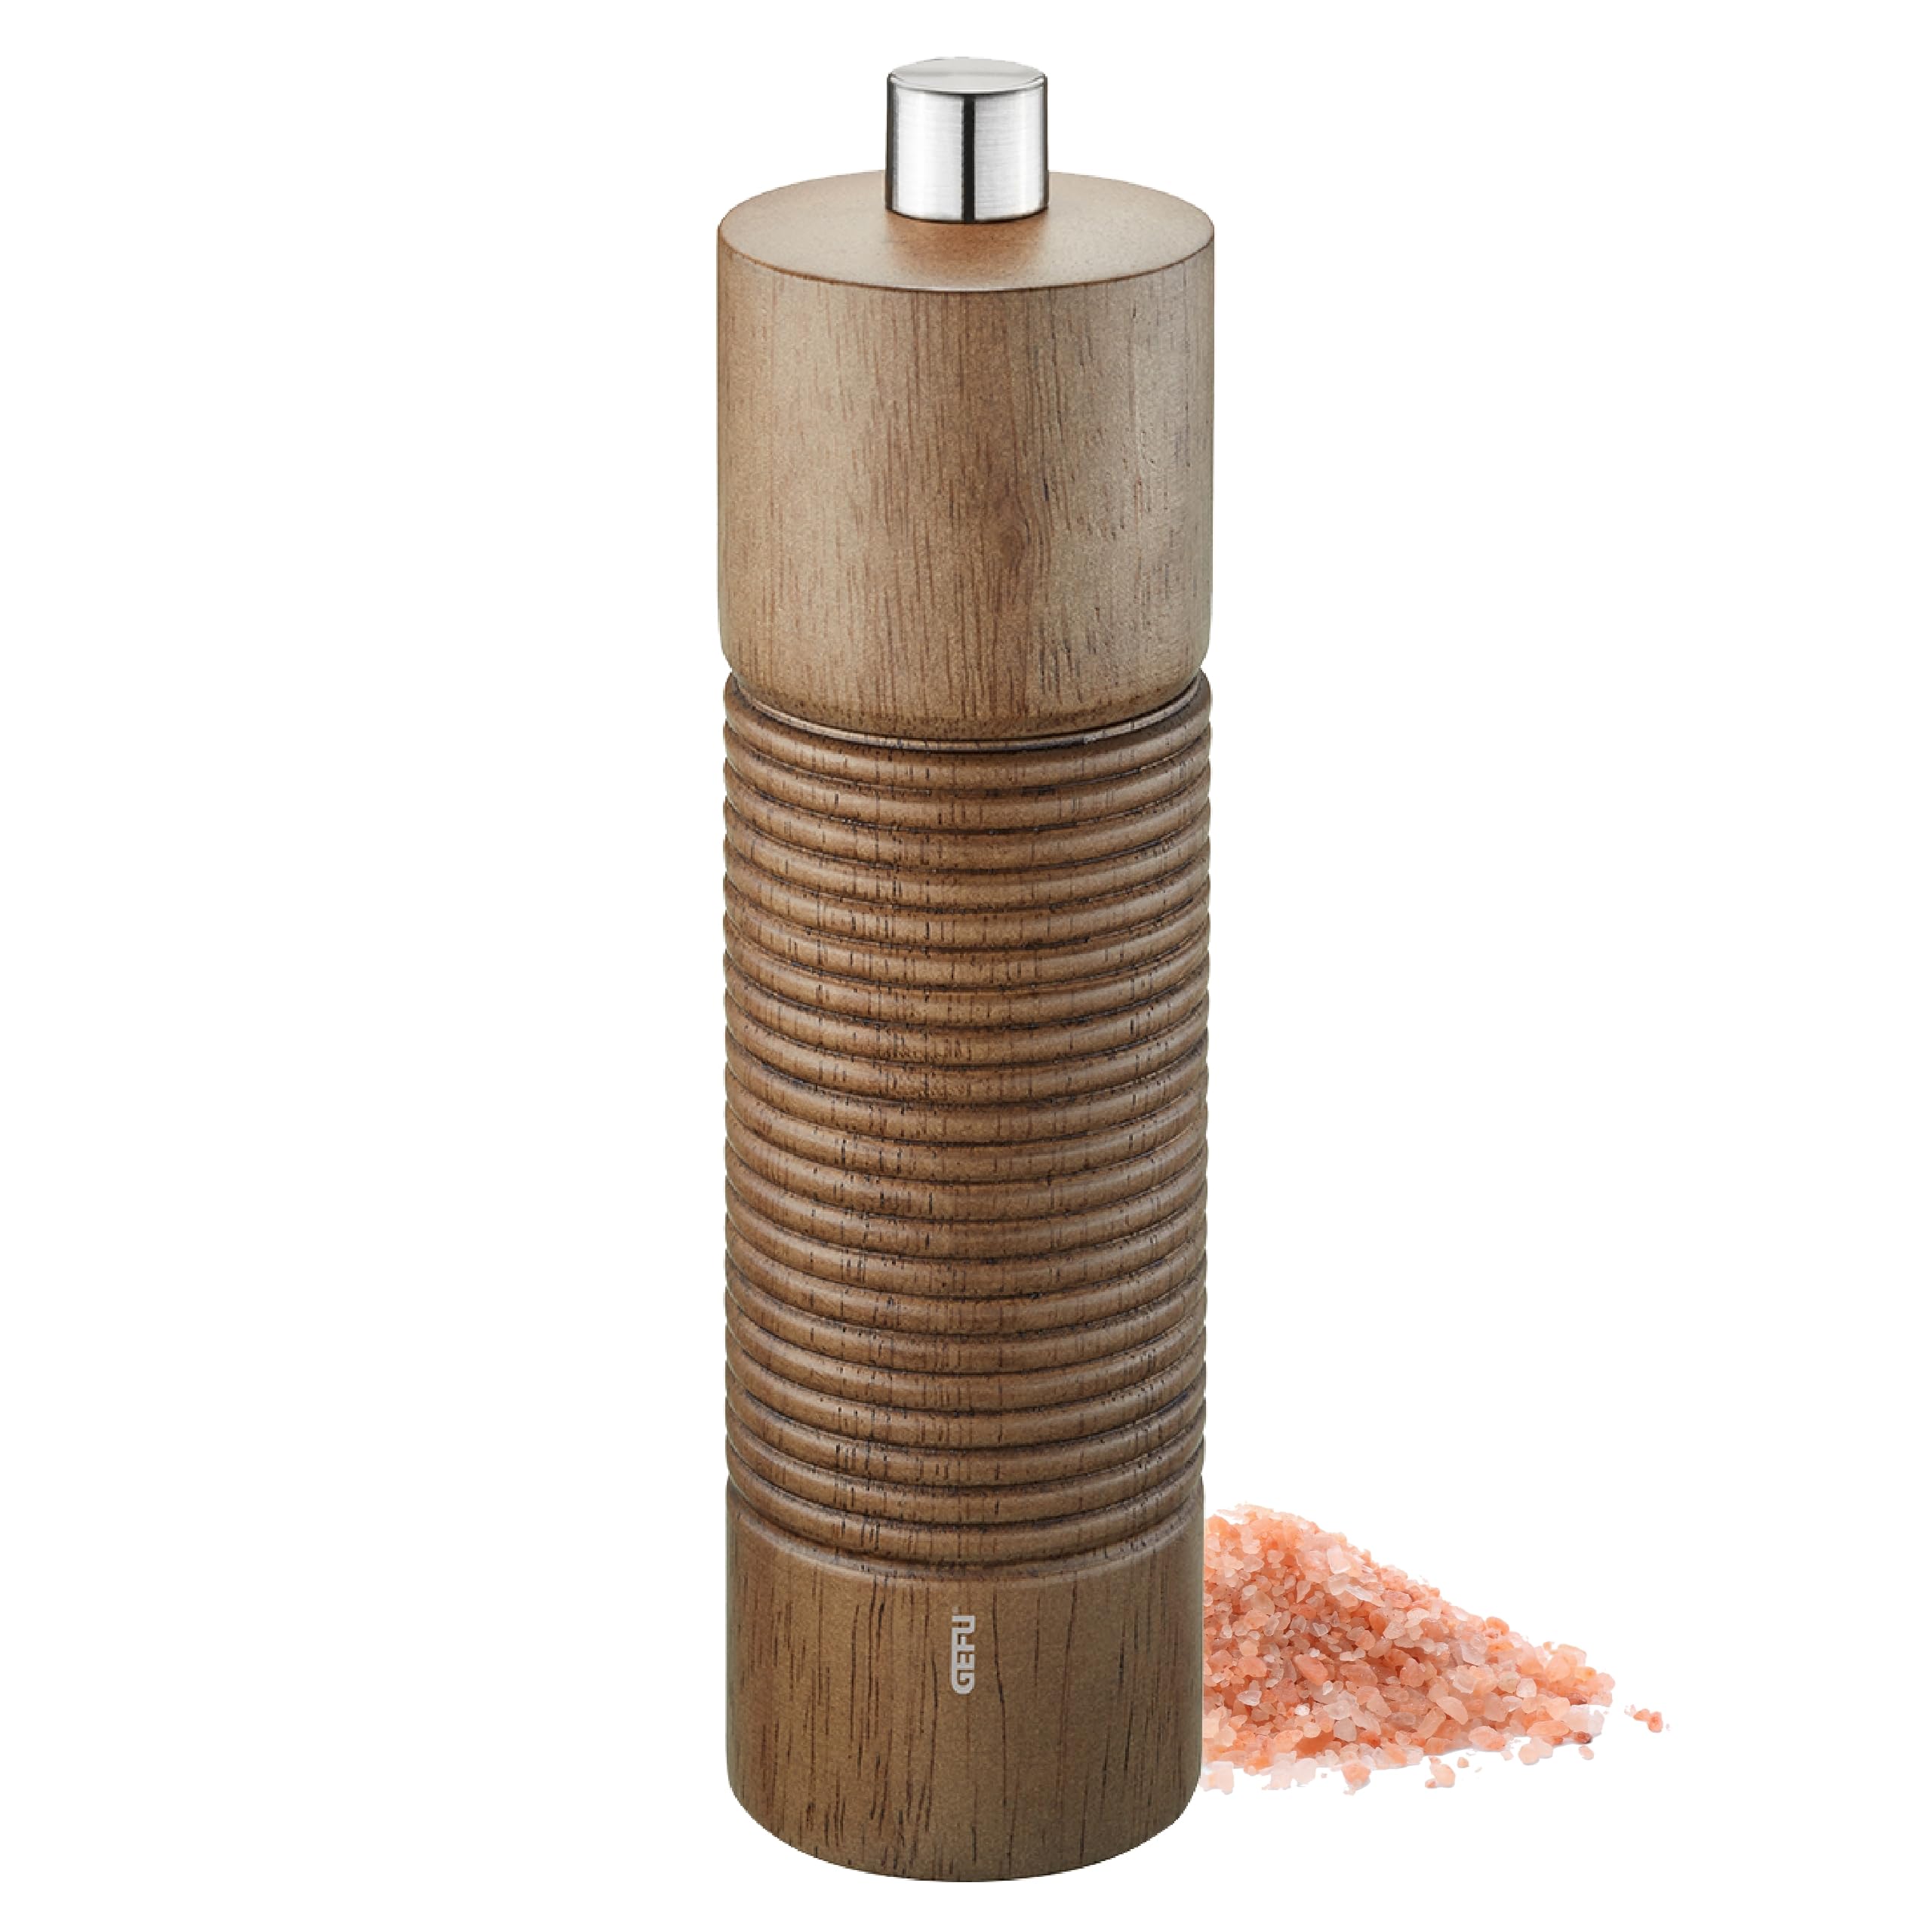 GEFU Salz- oder Pfeffermühle Tedoro - Manuelle Gewürzmühle - Unbefüllt - Verstellbares Keramikmahlwerk - Höhe 14 cm - Braun